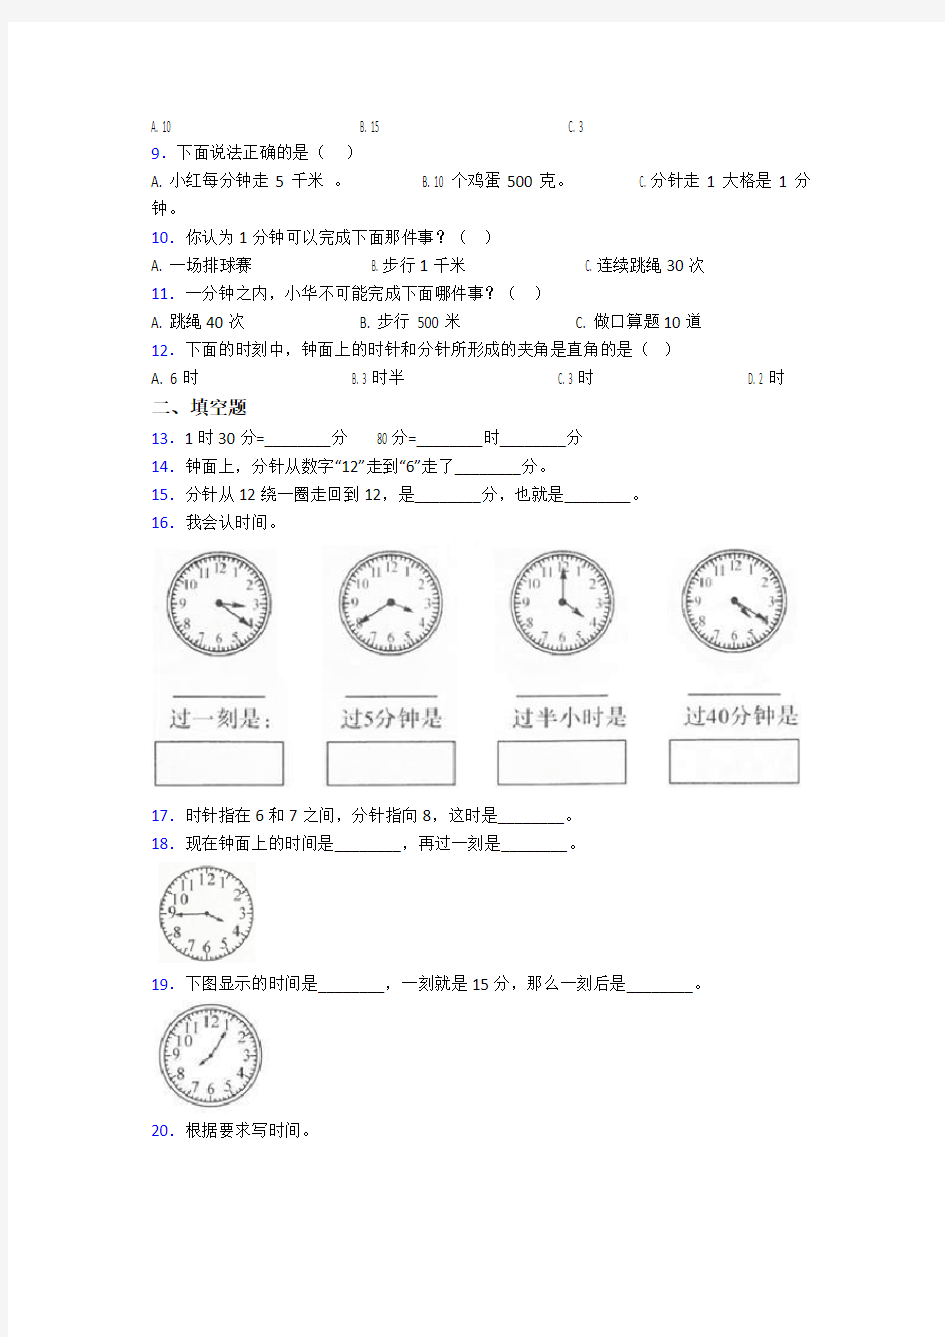 (必考题)小学数学二年级数学上册第七单元《认识时间》单元测试卷(有答案解析)